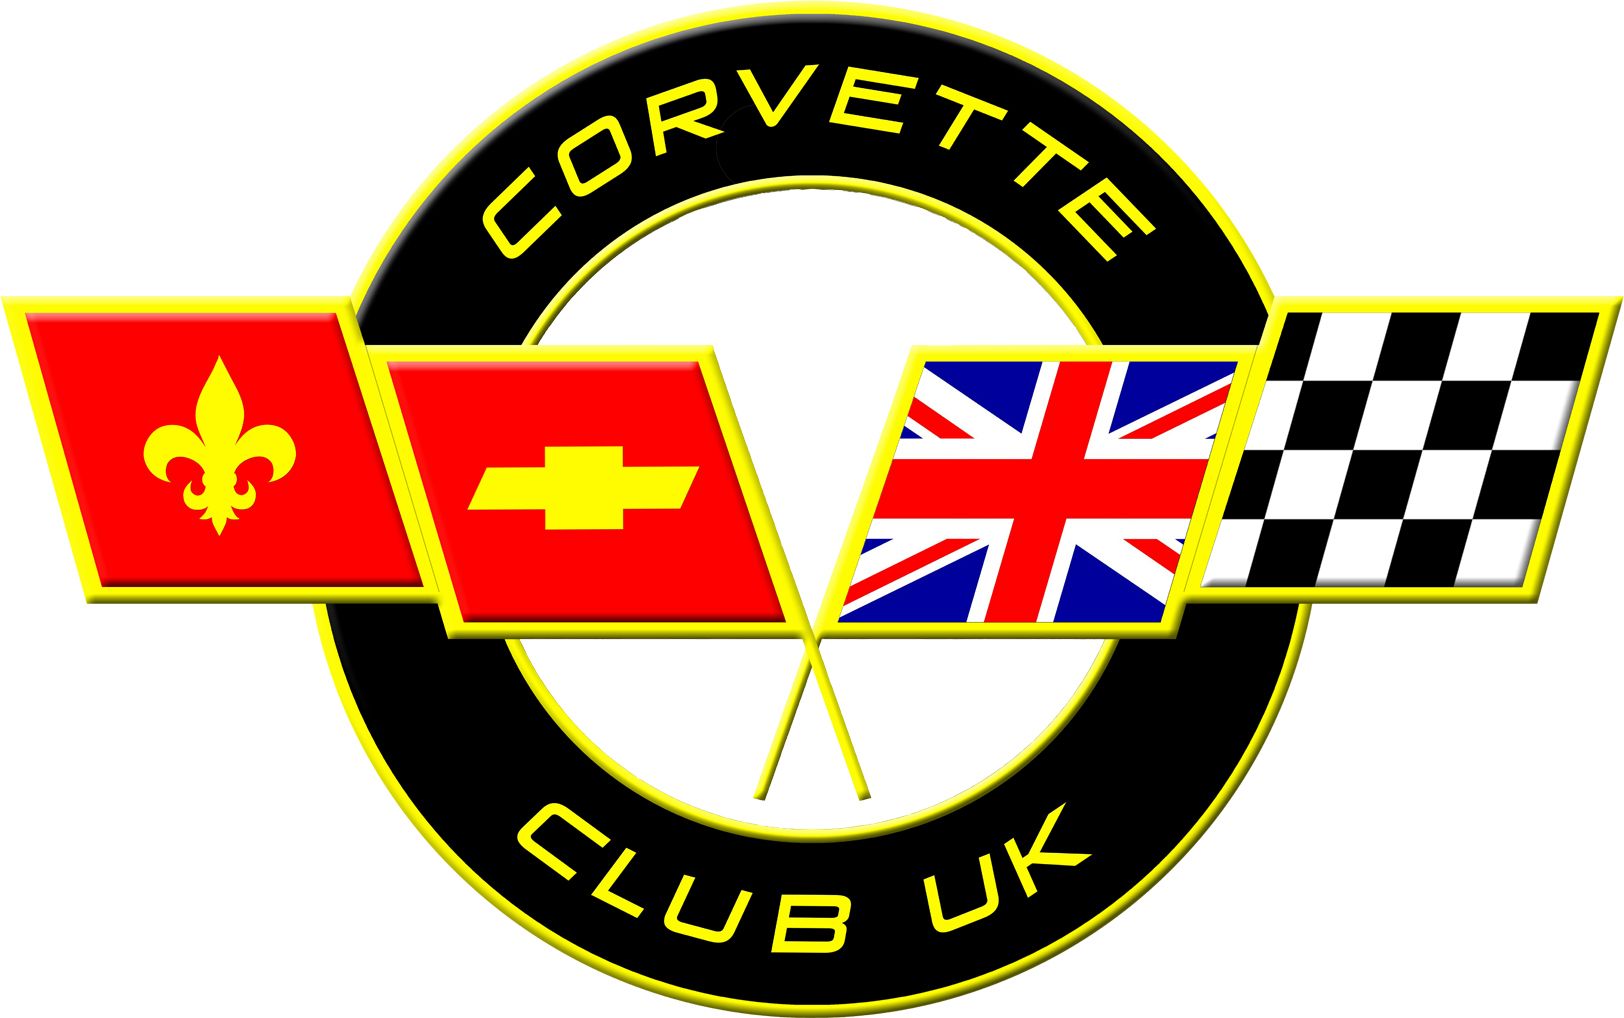 Classic Corvette Club UK